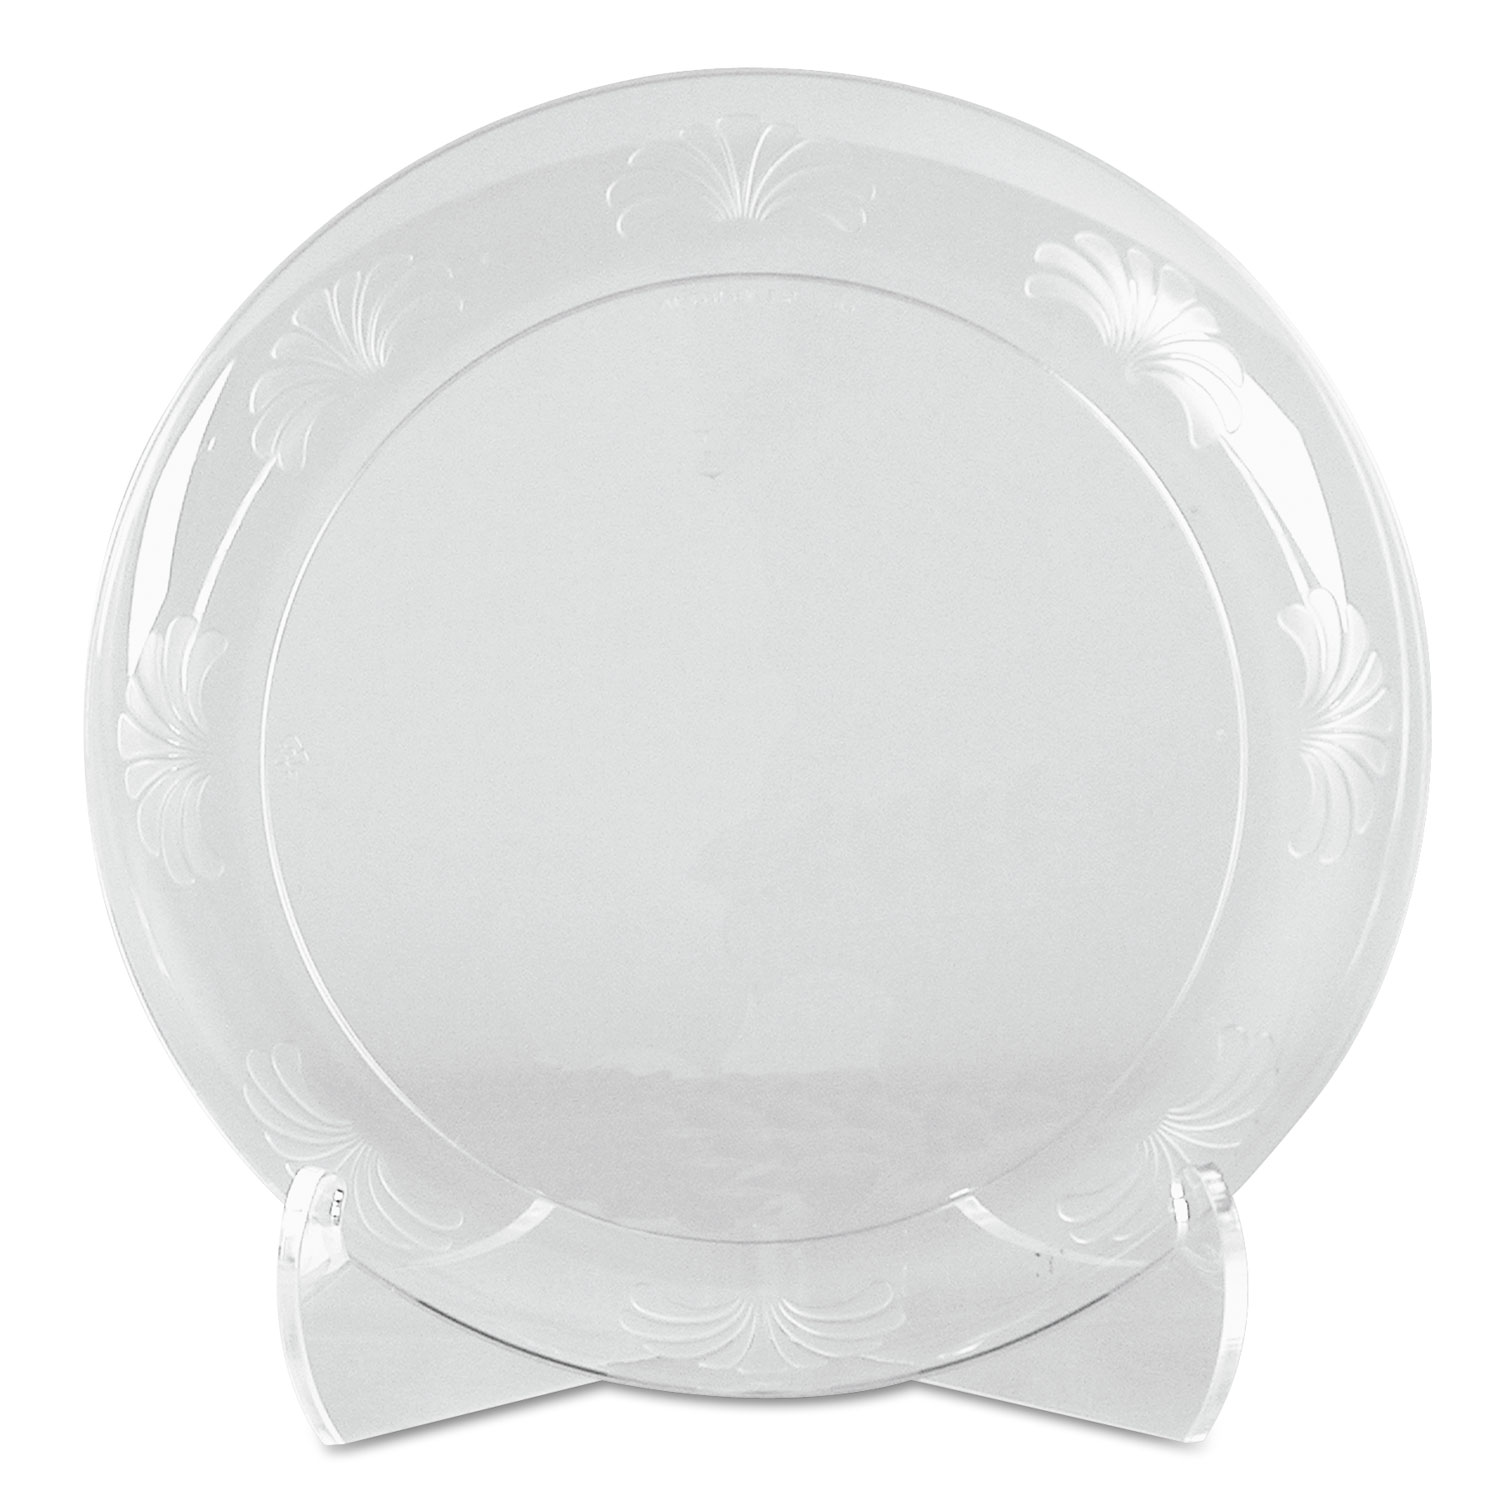 Designerware Plates, Plastic, 6, Clear, 180/Carton